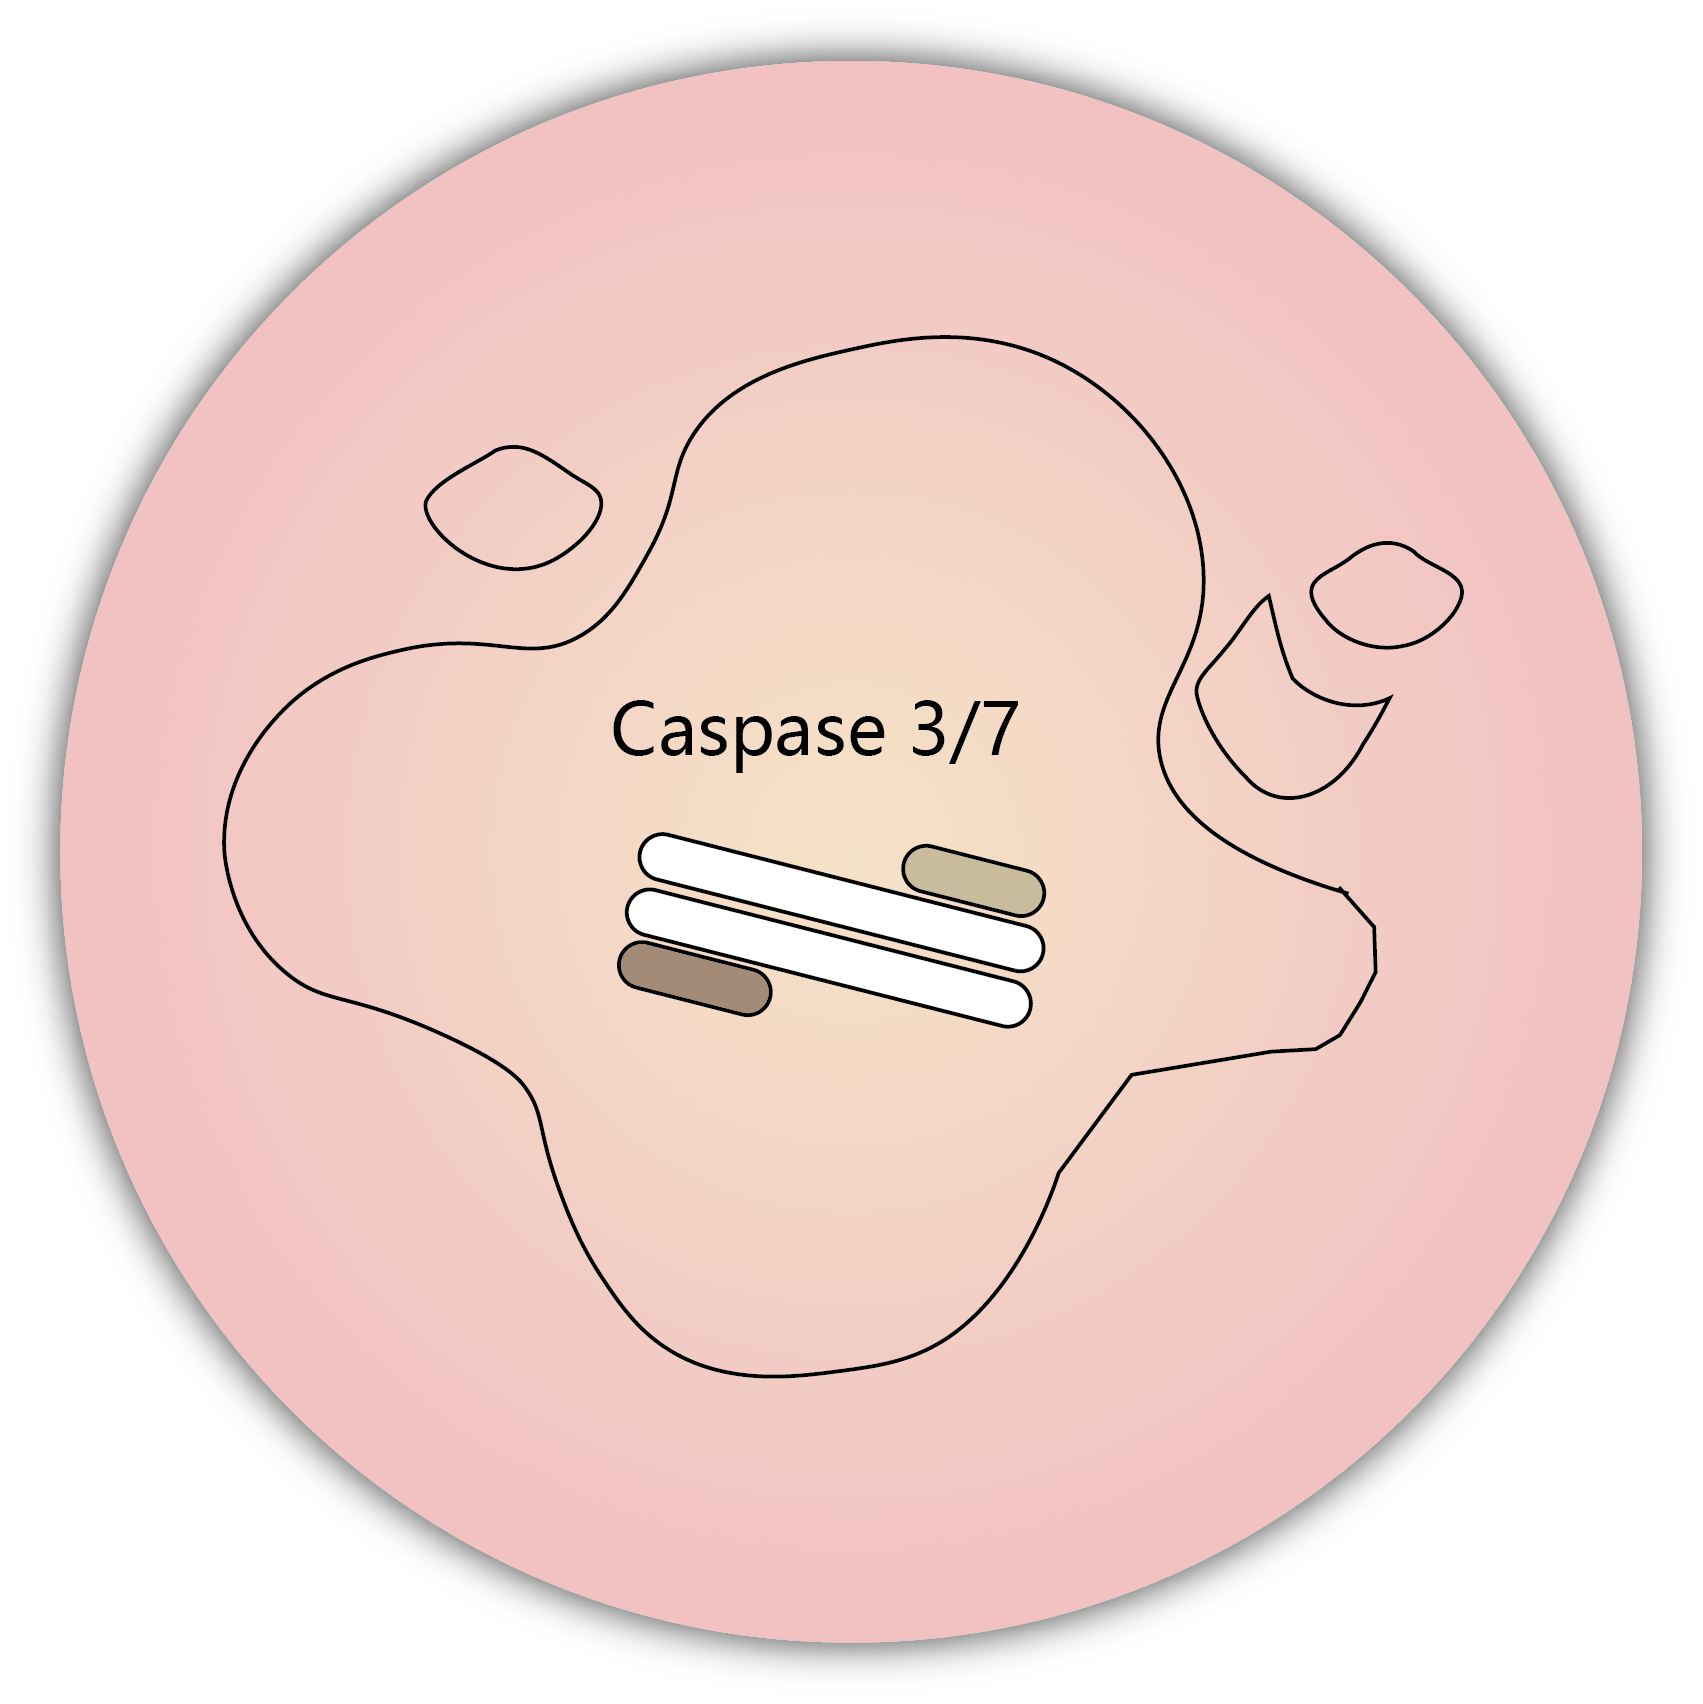 細胞凋亡 apoptosis-caspase 3/7 activation